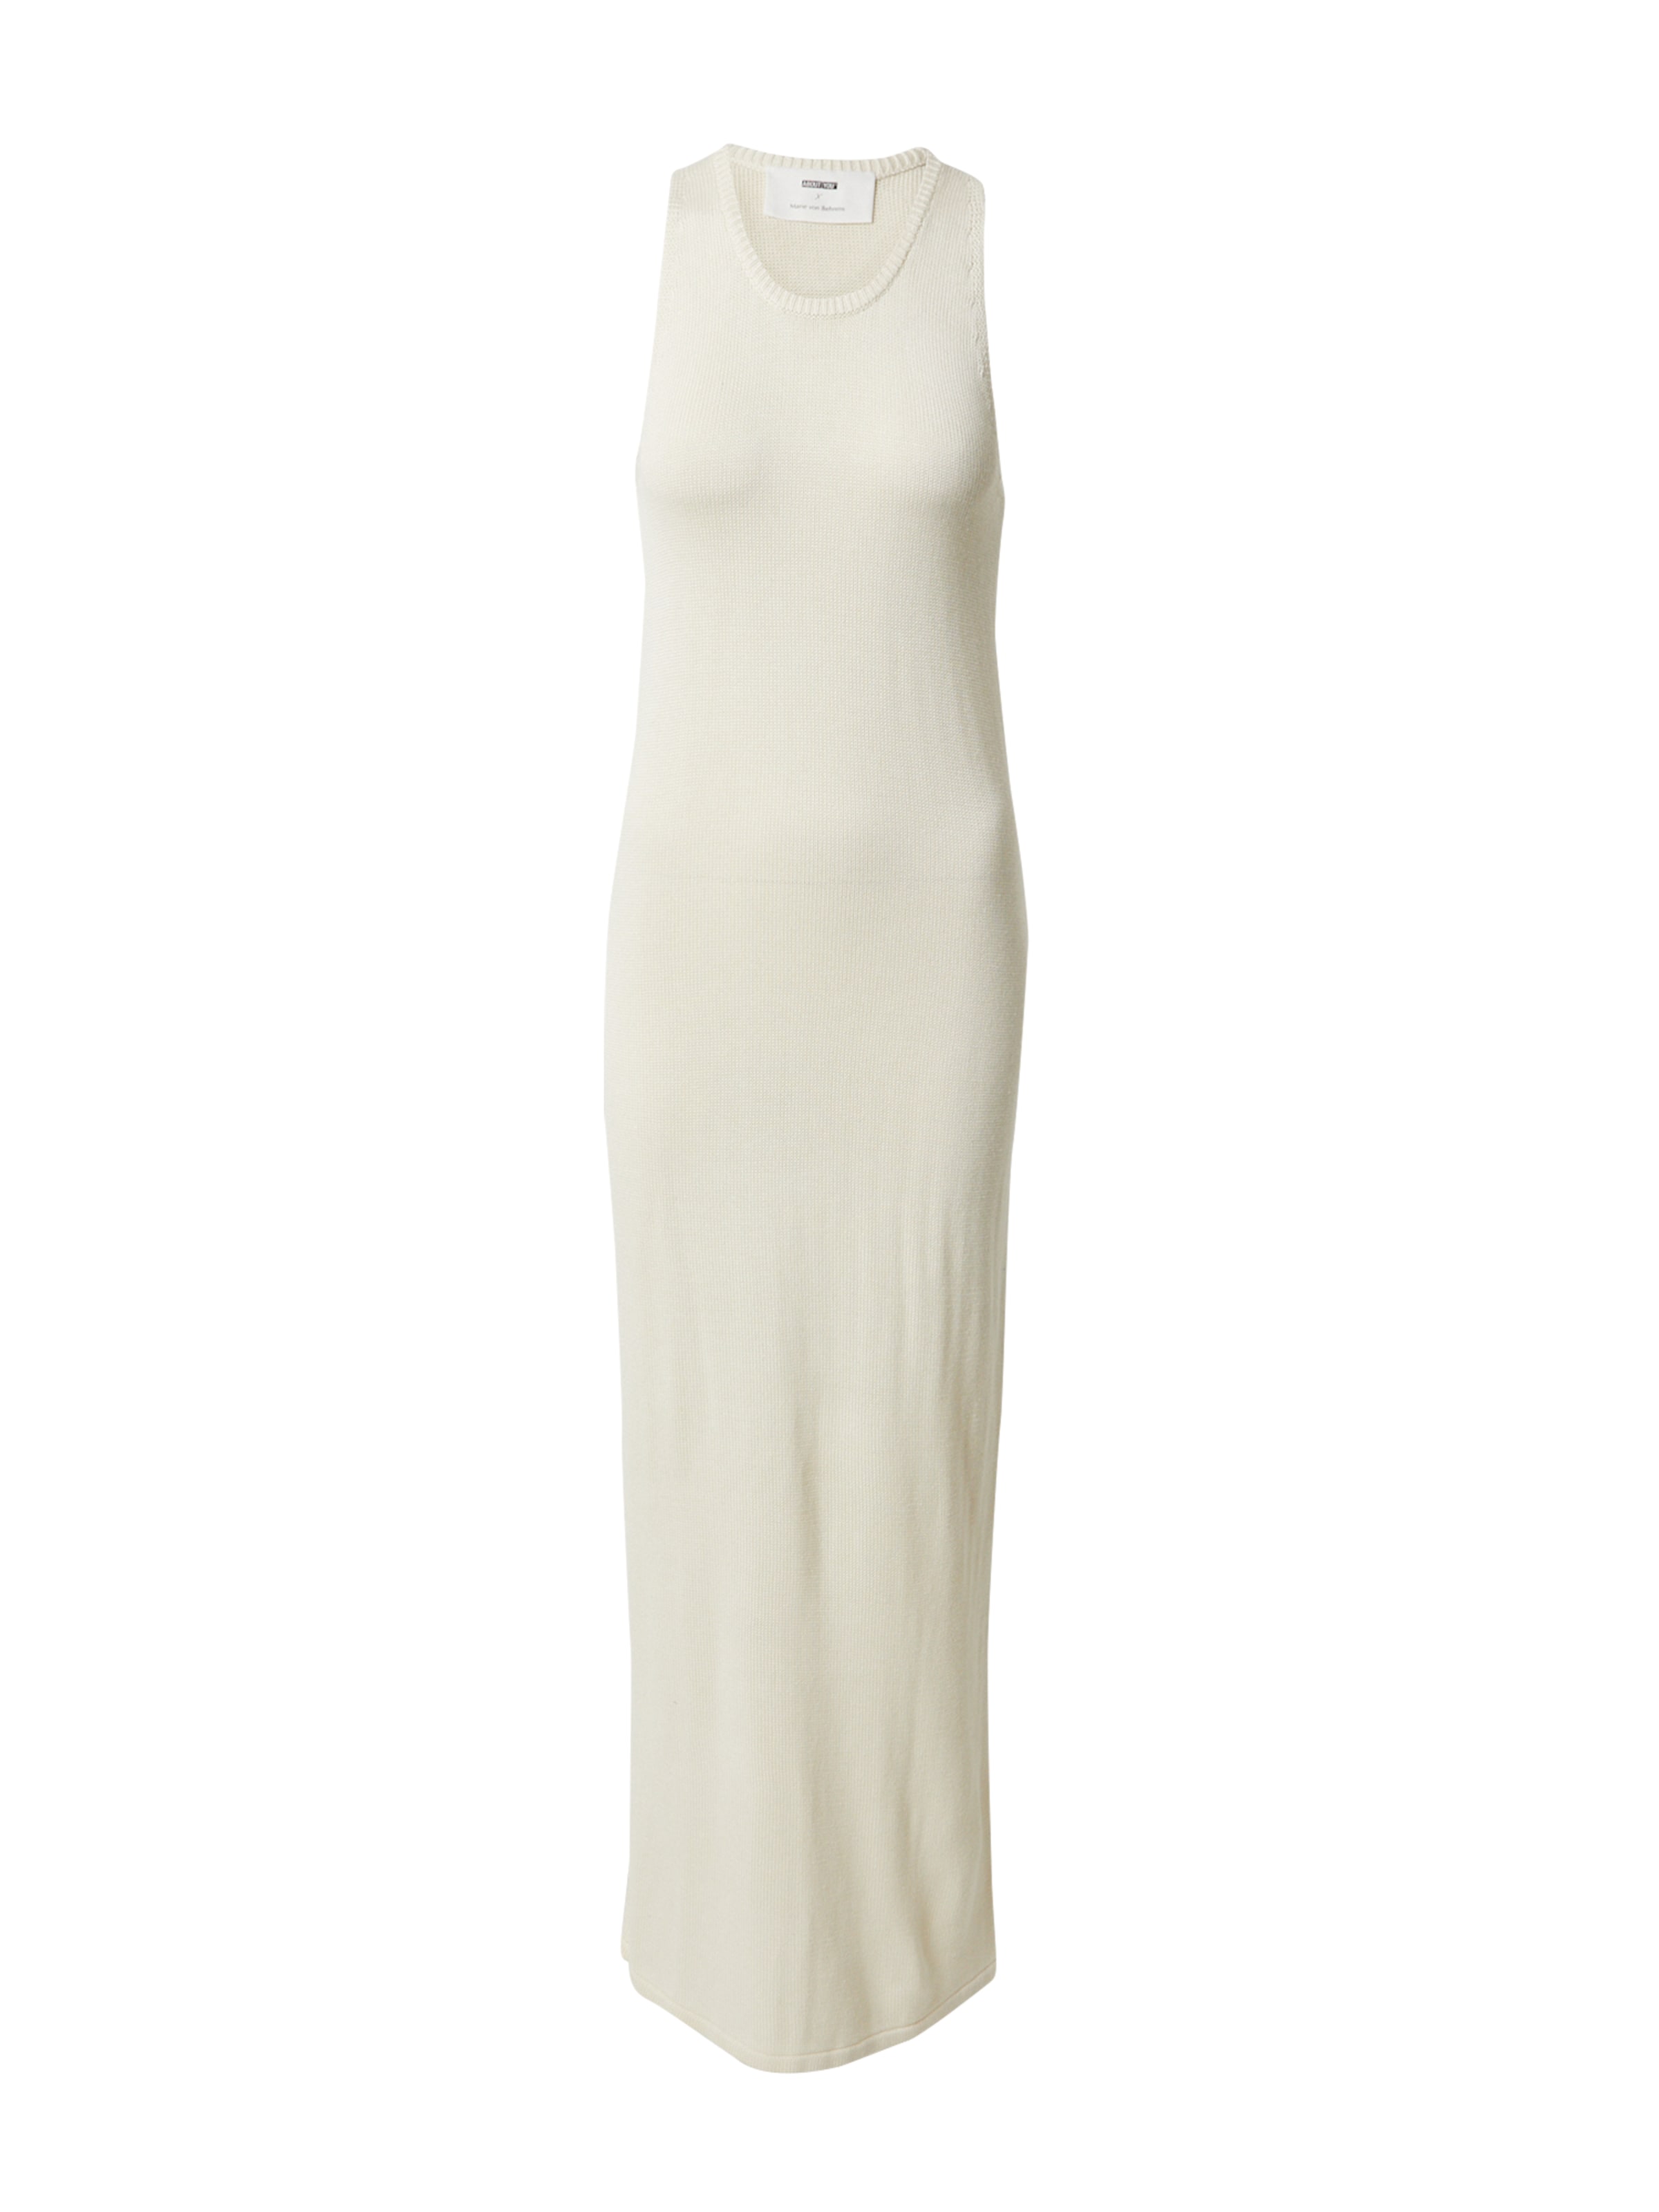 Frauen ABOUT YOU x Marie von Behrens Top 100 x Marie von Behrens Kleid 'May' in Weiß, Offwhite - DW69344